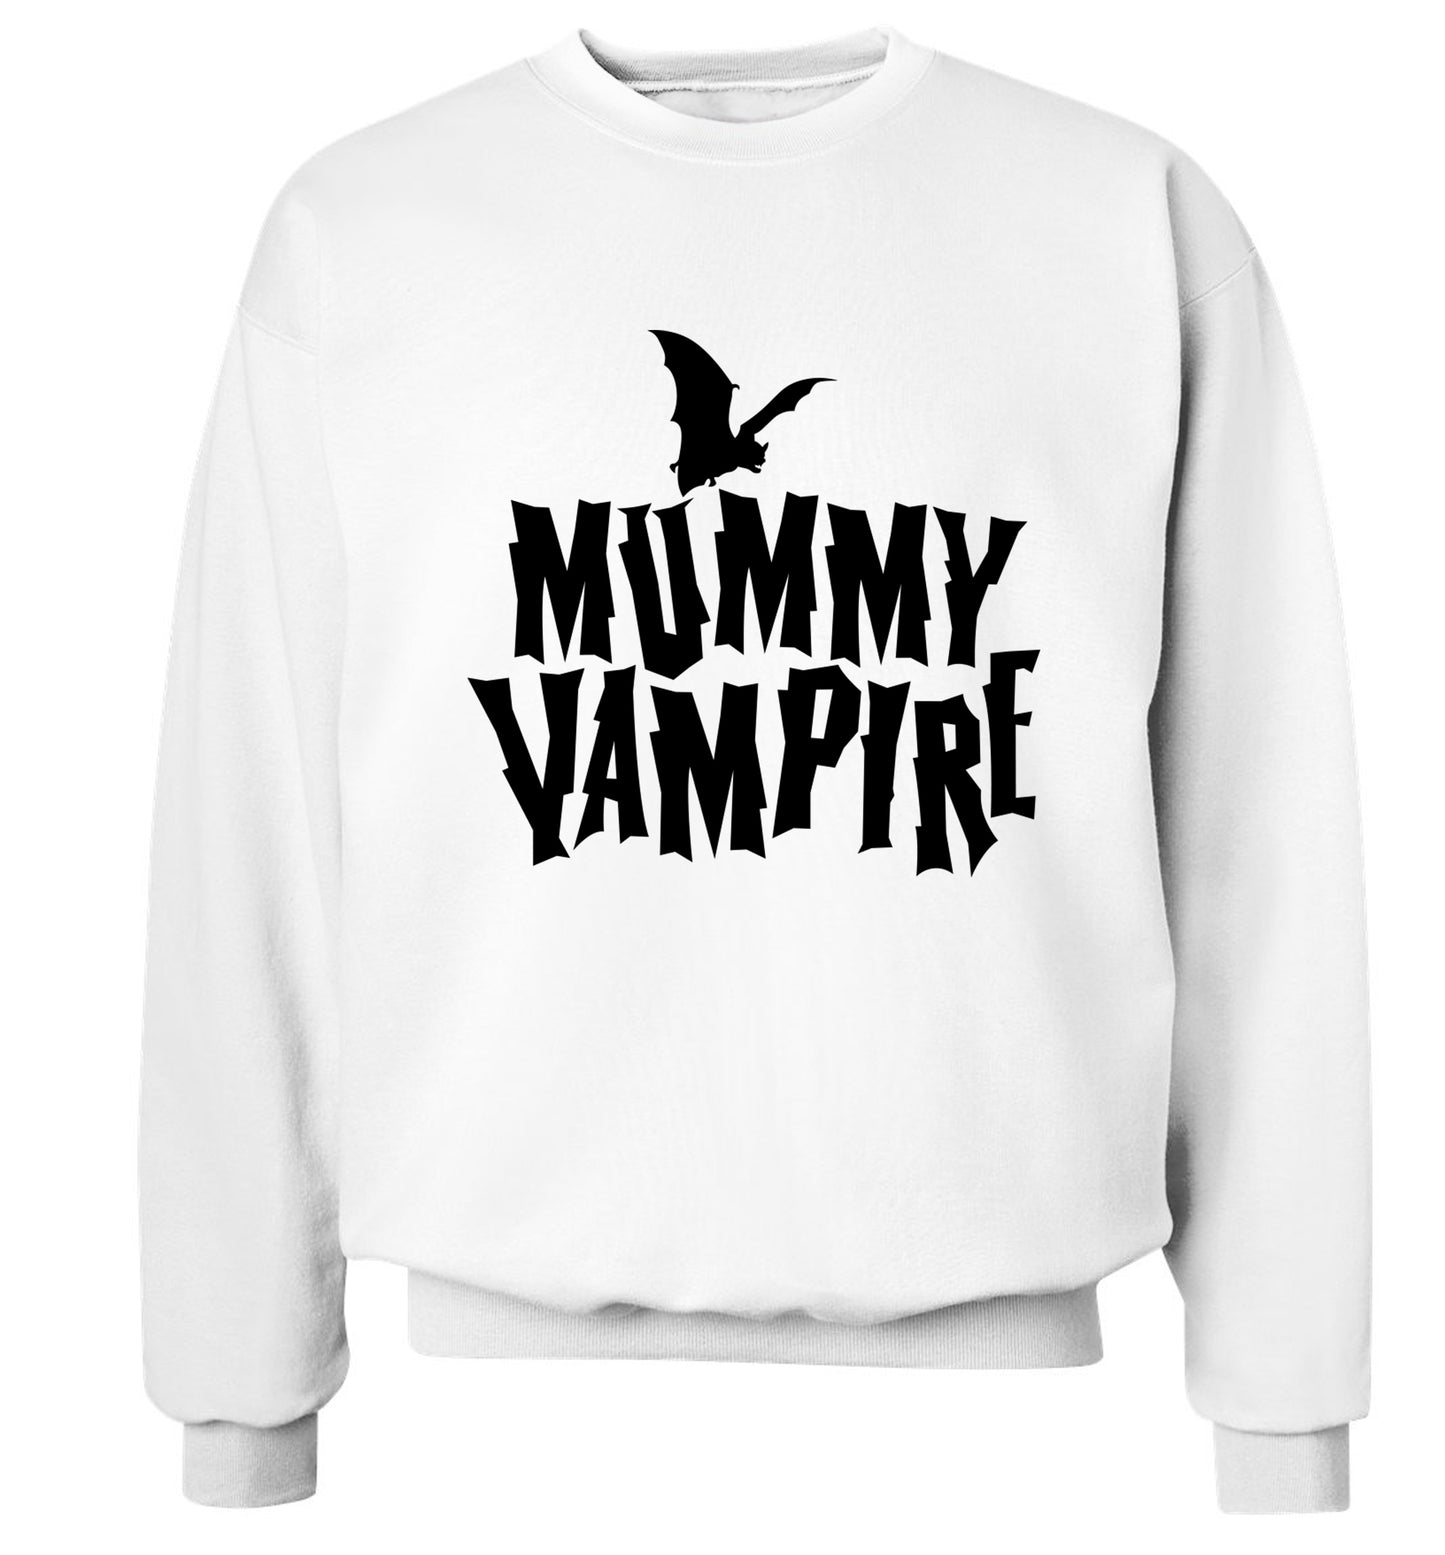 Mummy vampire adult's unisex white sweater 2XL